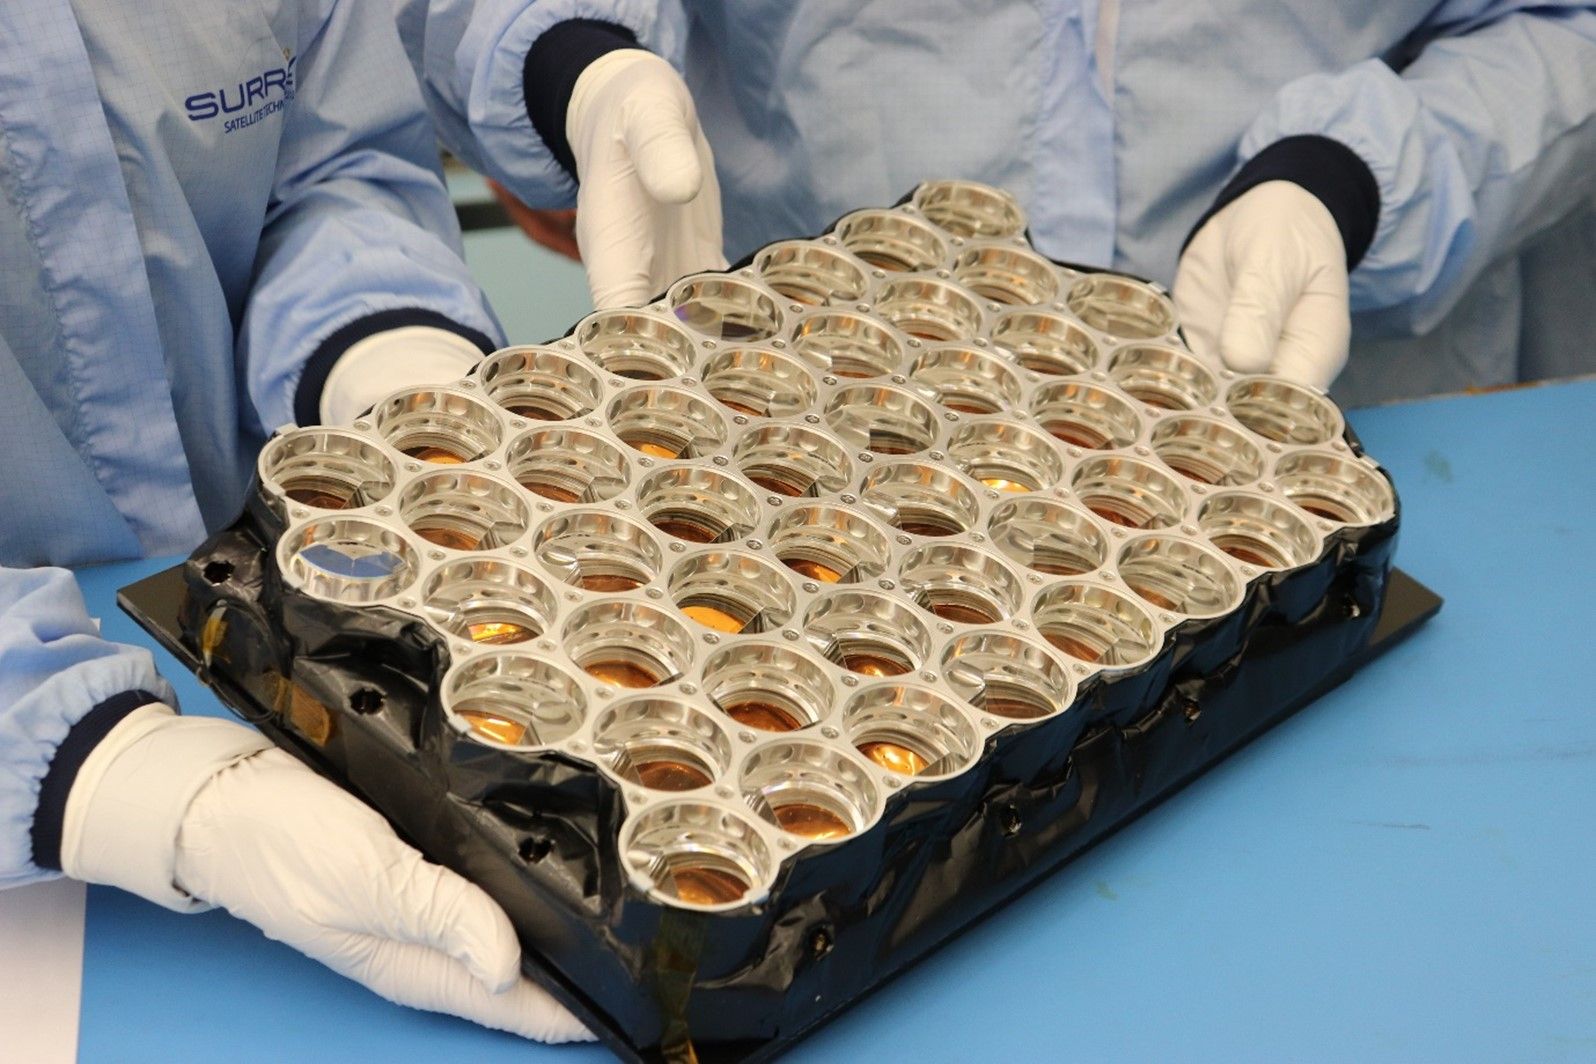 Lunar Pathfinder retroreflector area made by NASA and delivered to ESA for Lunar Pathfinder